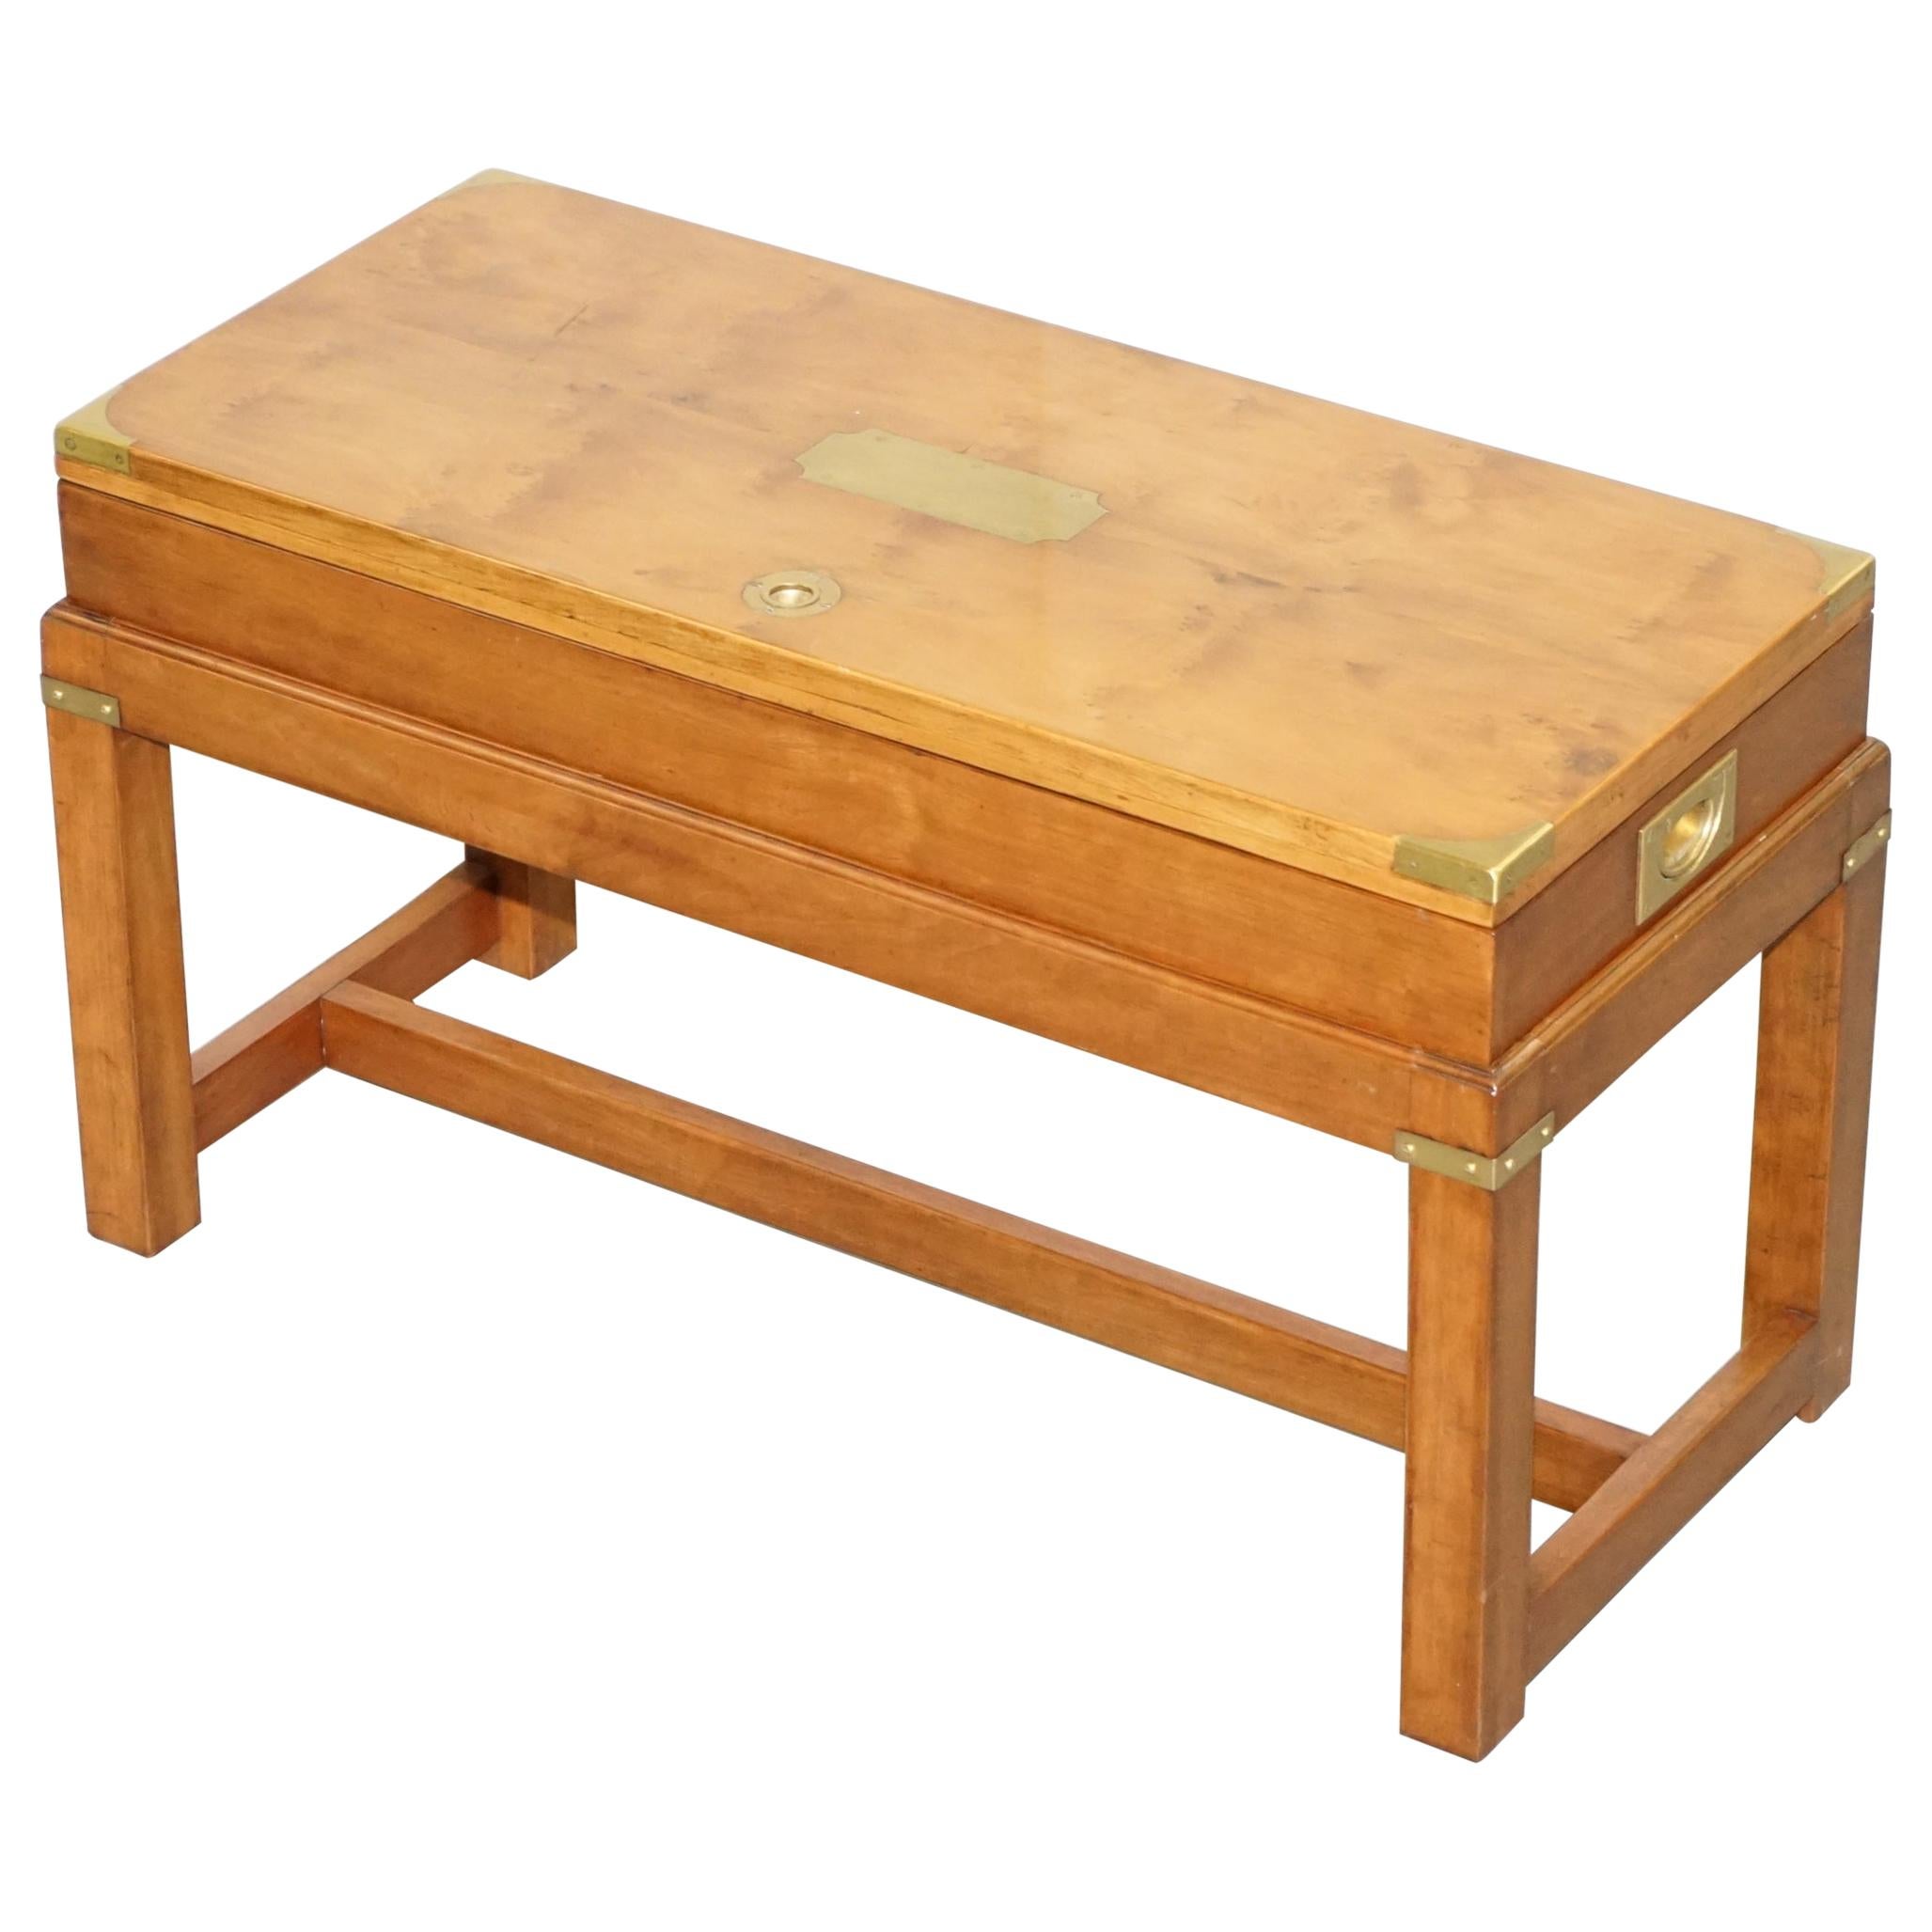 Rare table d'appoint en bois de loupe d'if pour armes de campagne sur socle d'origine